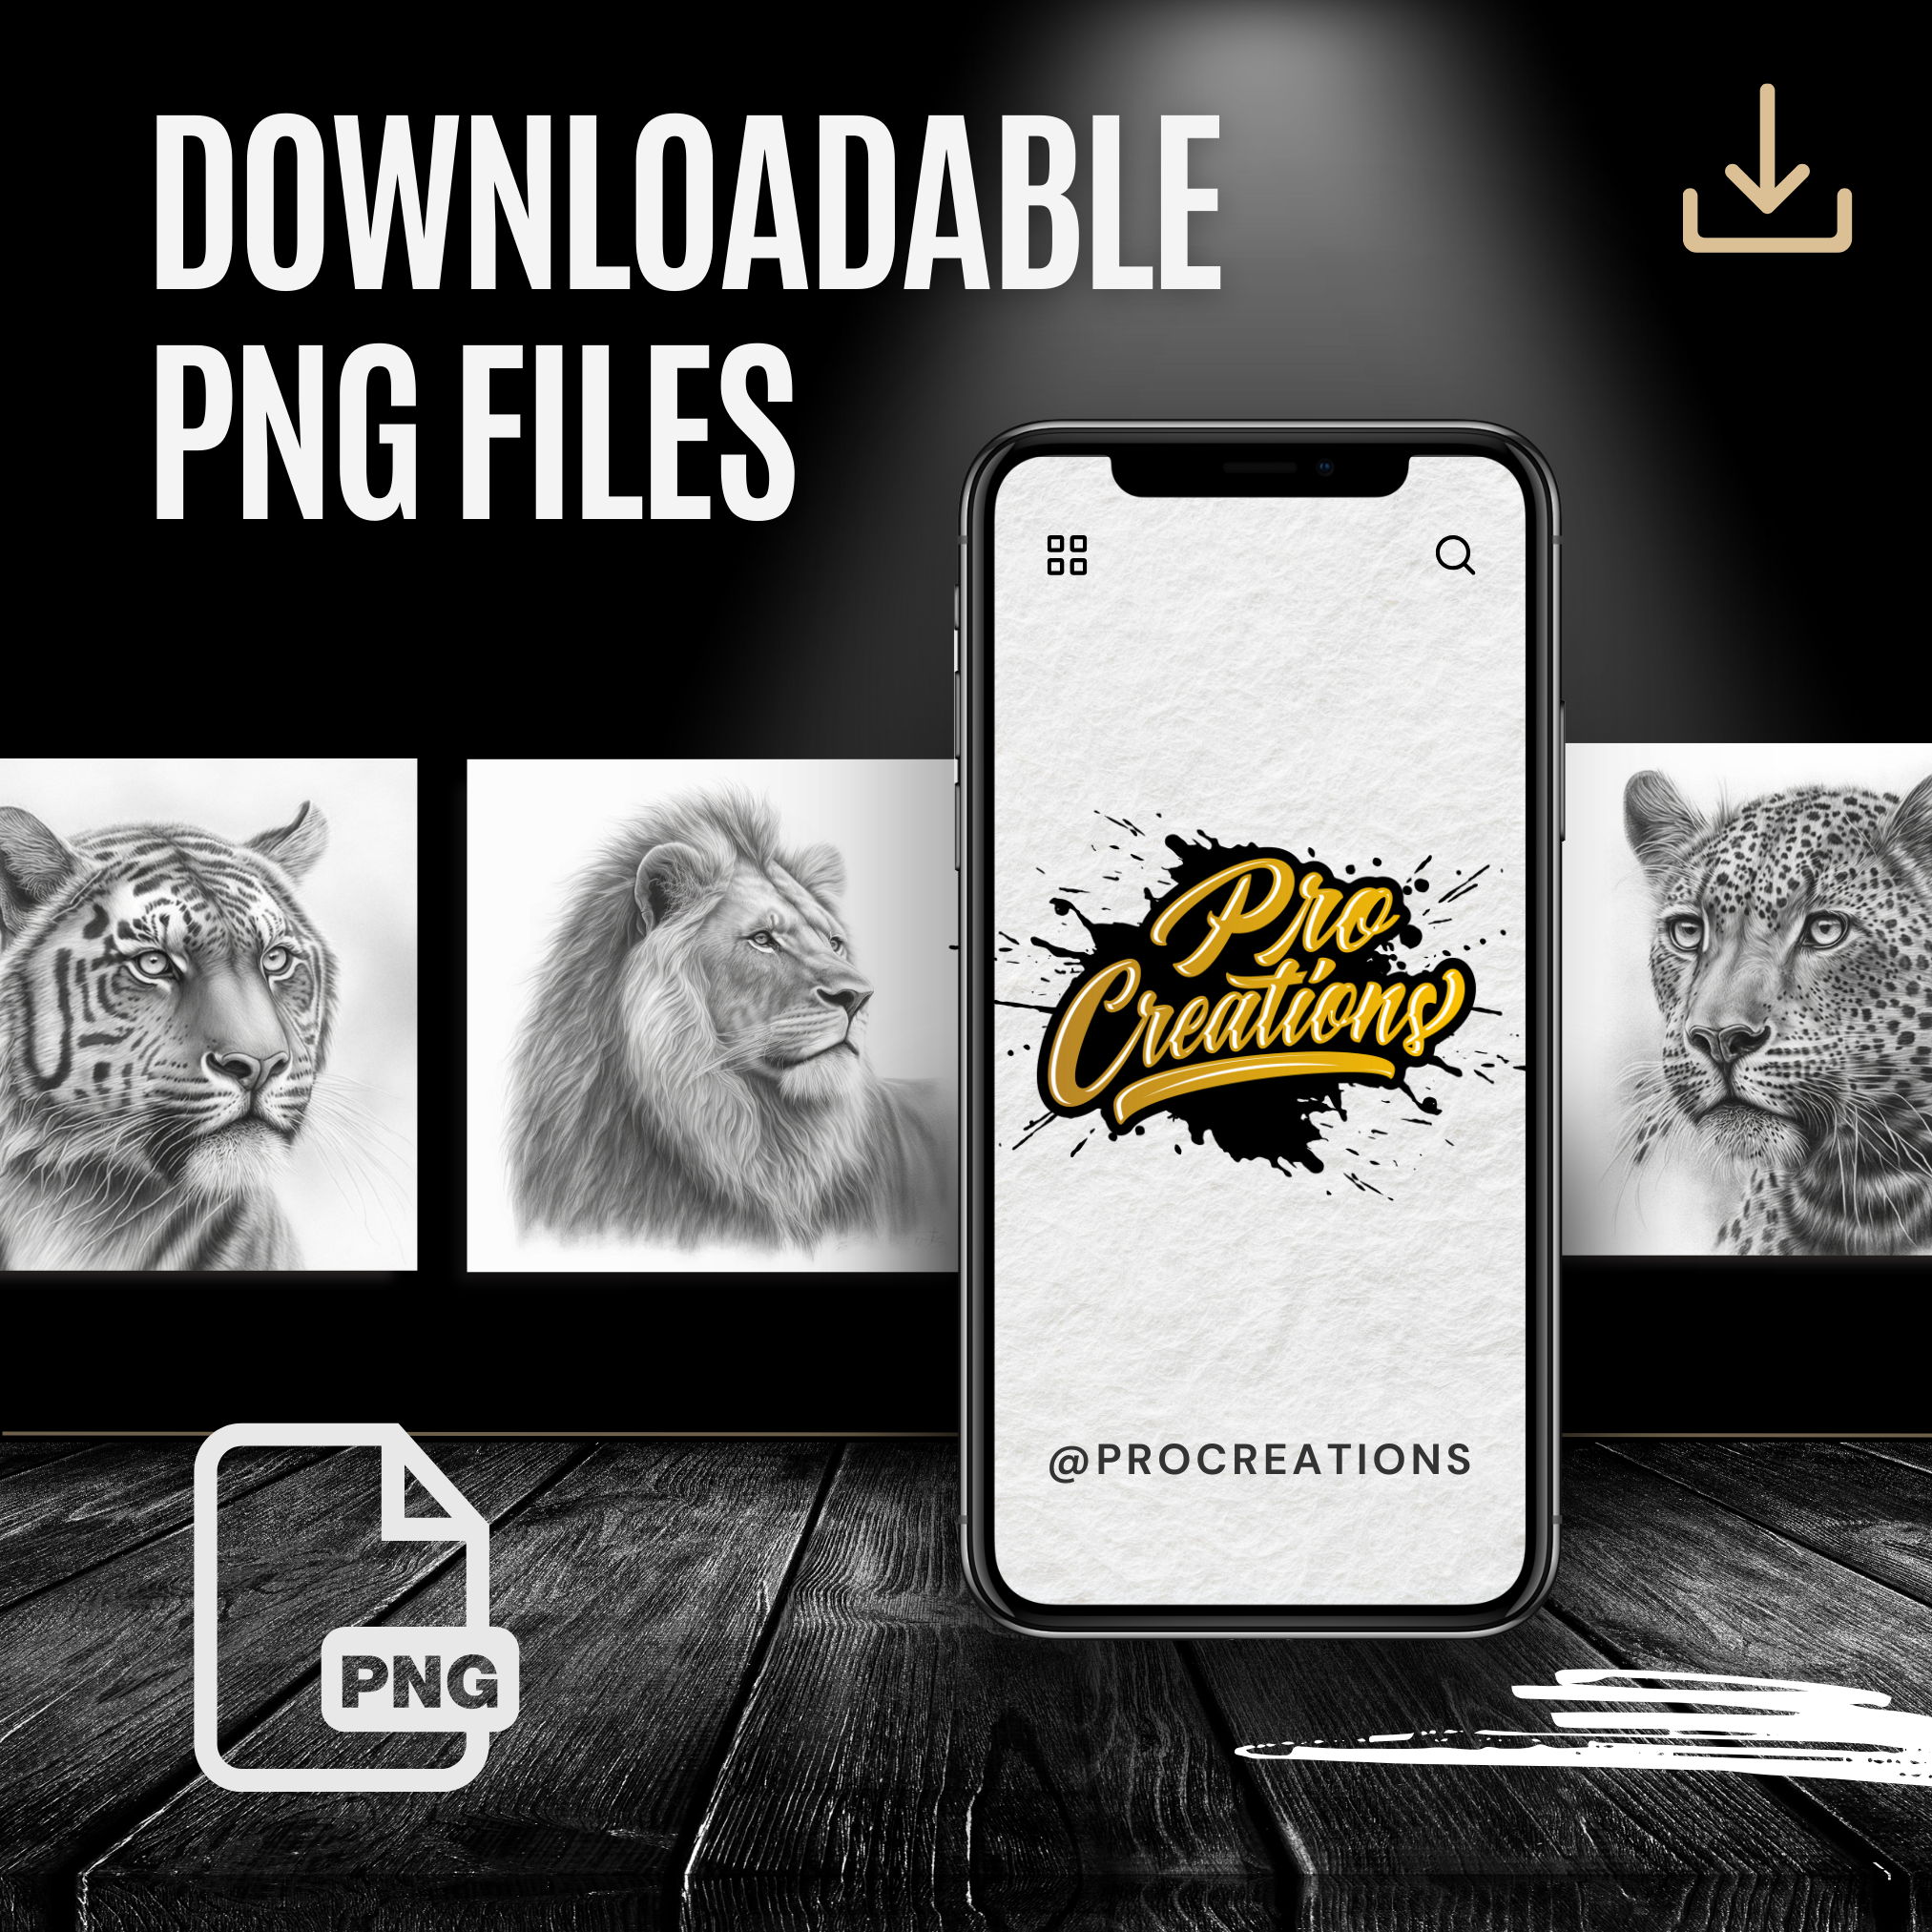 Colección de diseños de referencia digital de Big Cats: 100 imágenes de Procreate y Sketchbook